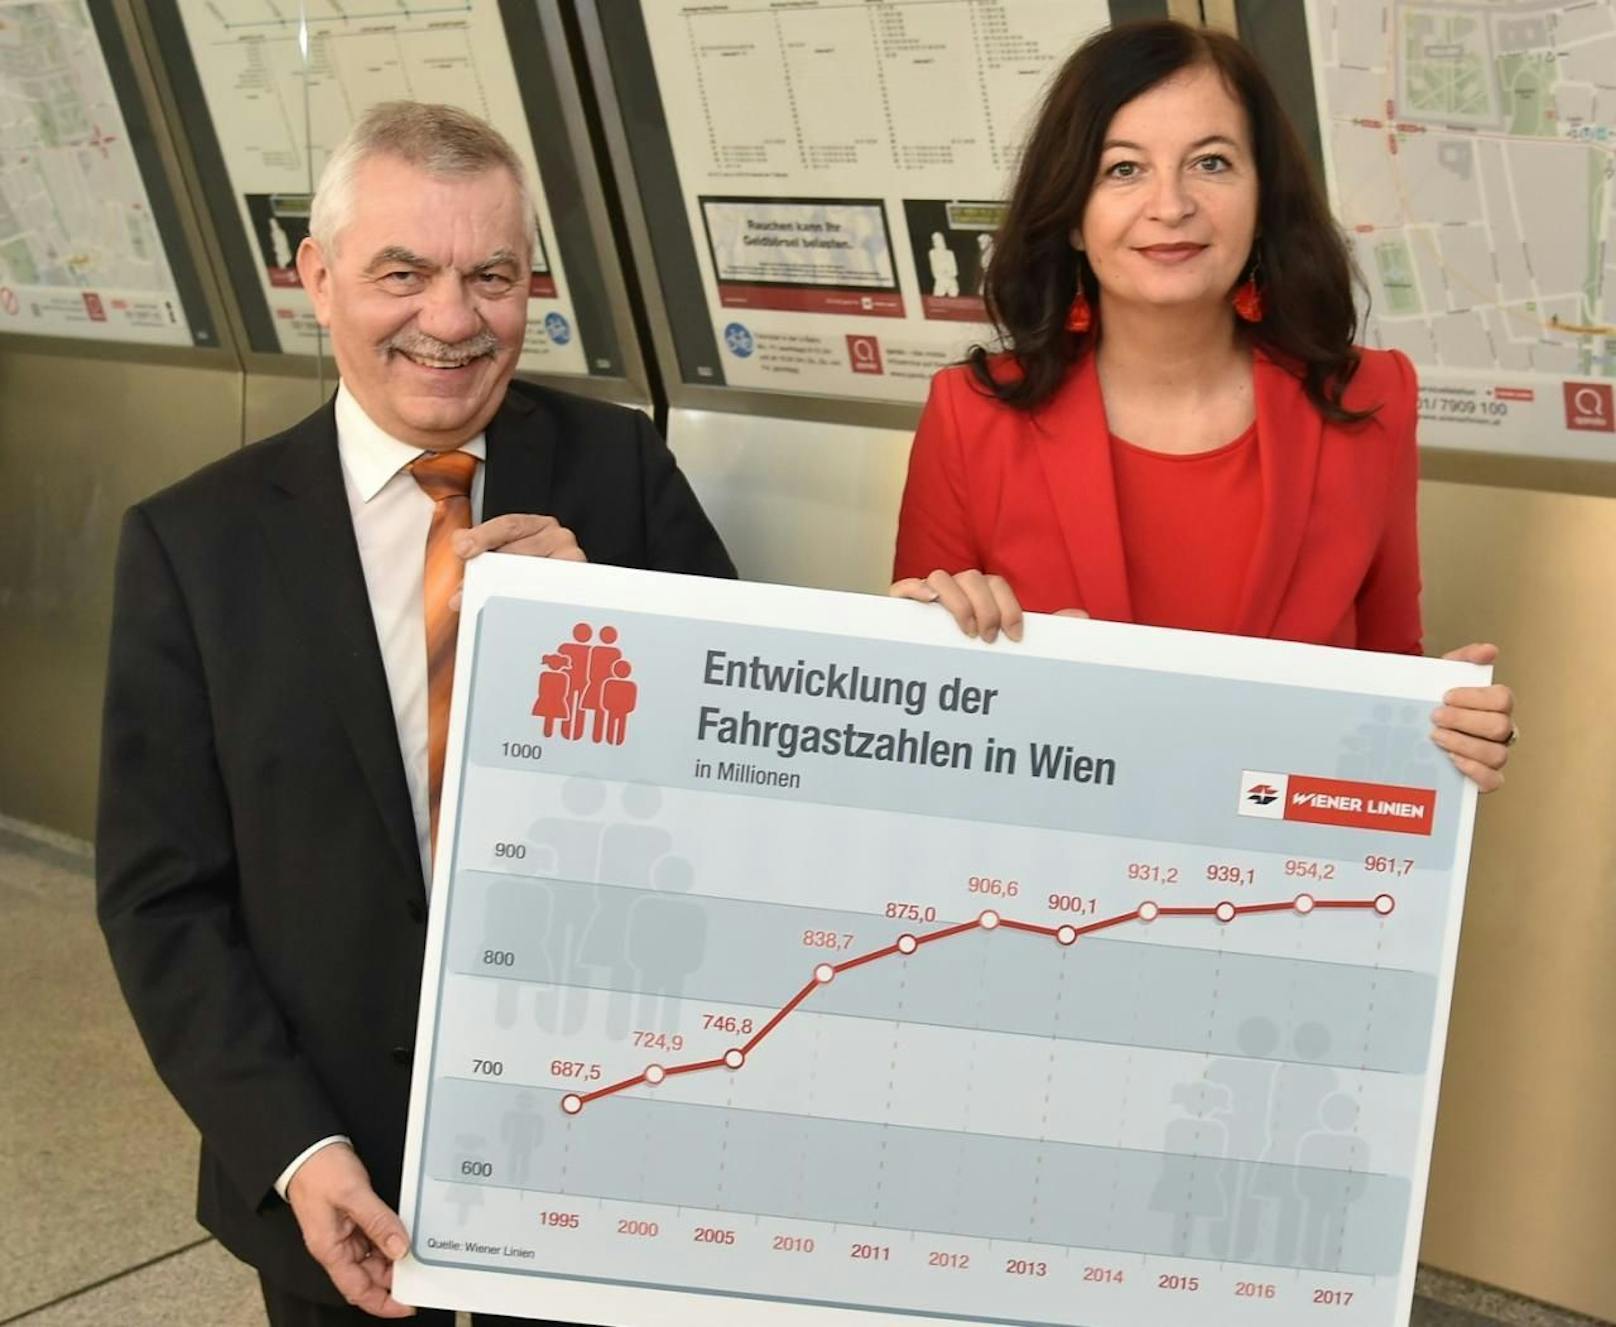 Wiener-Linien-Geschäftsführer Günter Steinbauer und Öffi-Stadträtin Ulli Sima freuen sich über den Fahrgastrekord 2017.